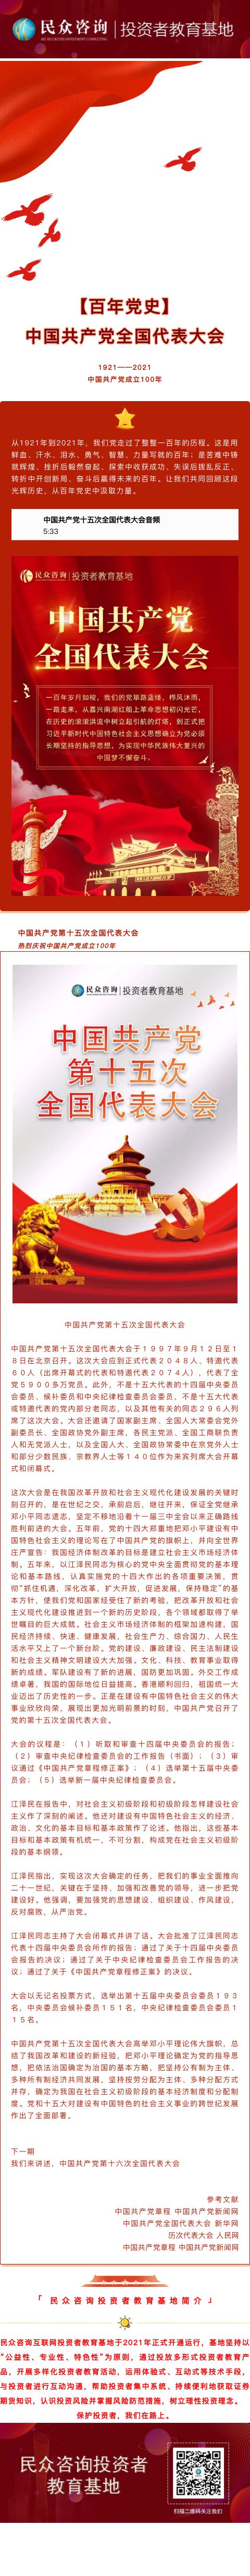 【百年党史】中国共产党第十五次全国代表大会.jpg